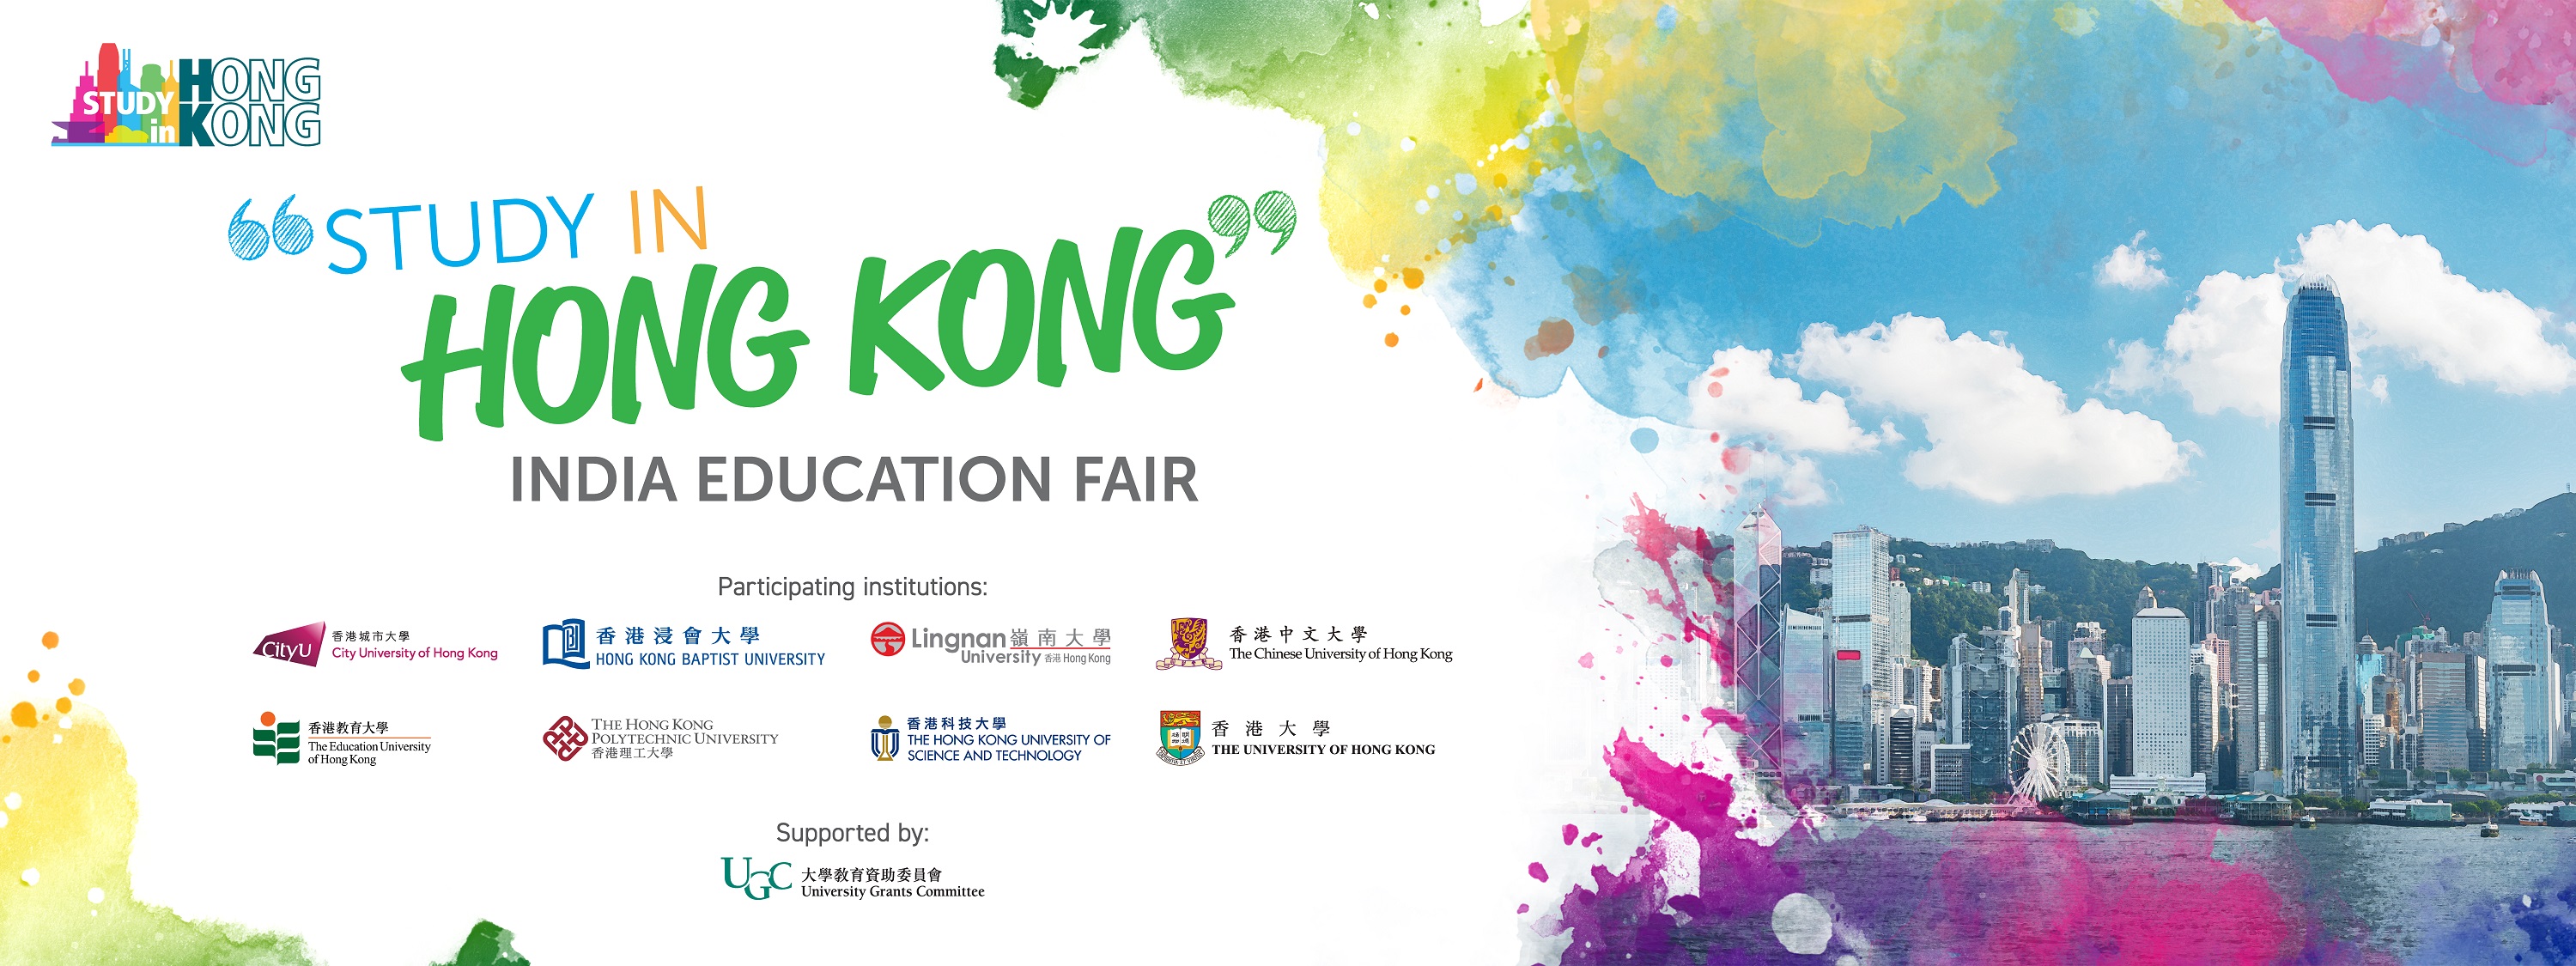 Study in Hong Kong India Education Fair